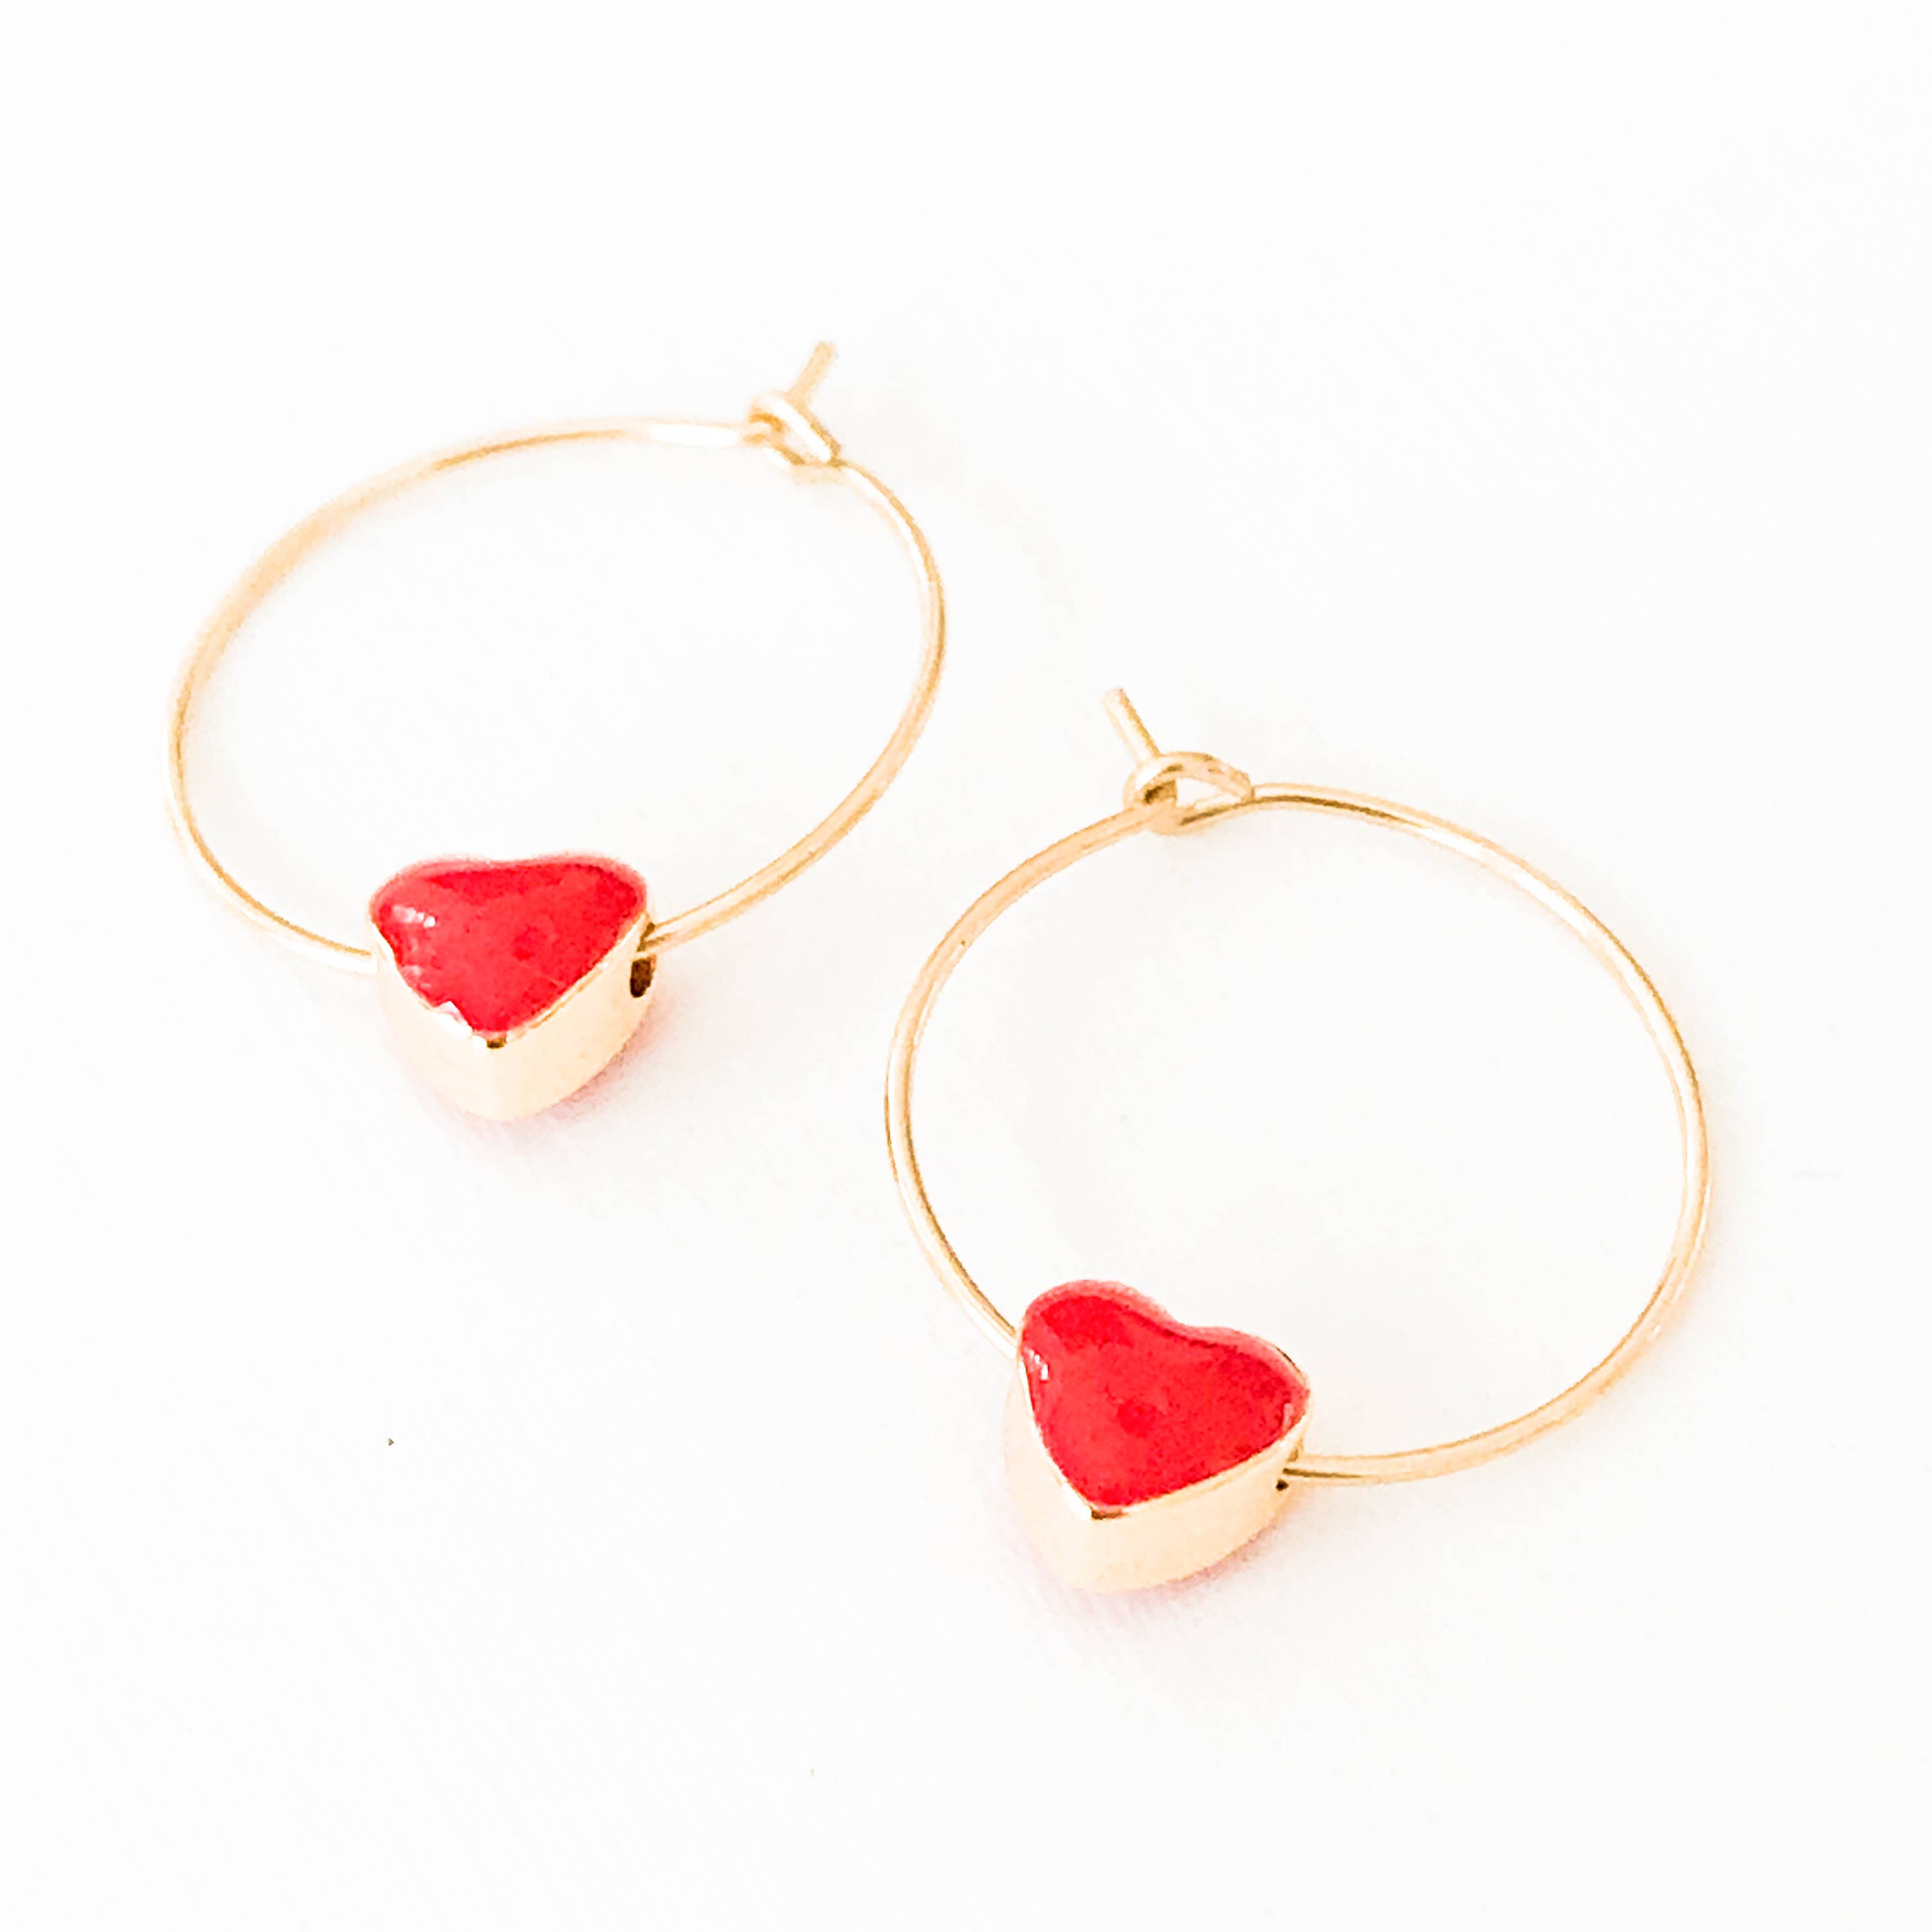 Valentine Earrings Bohemian Statement Earrings Hypoallergenic Earrings Red Heart Dangle Genuine Leather Cork Earrings Gifts for Her